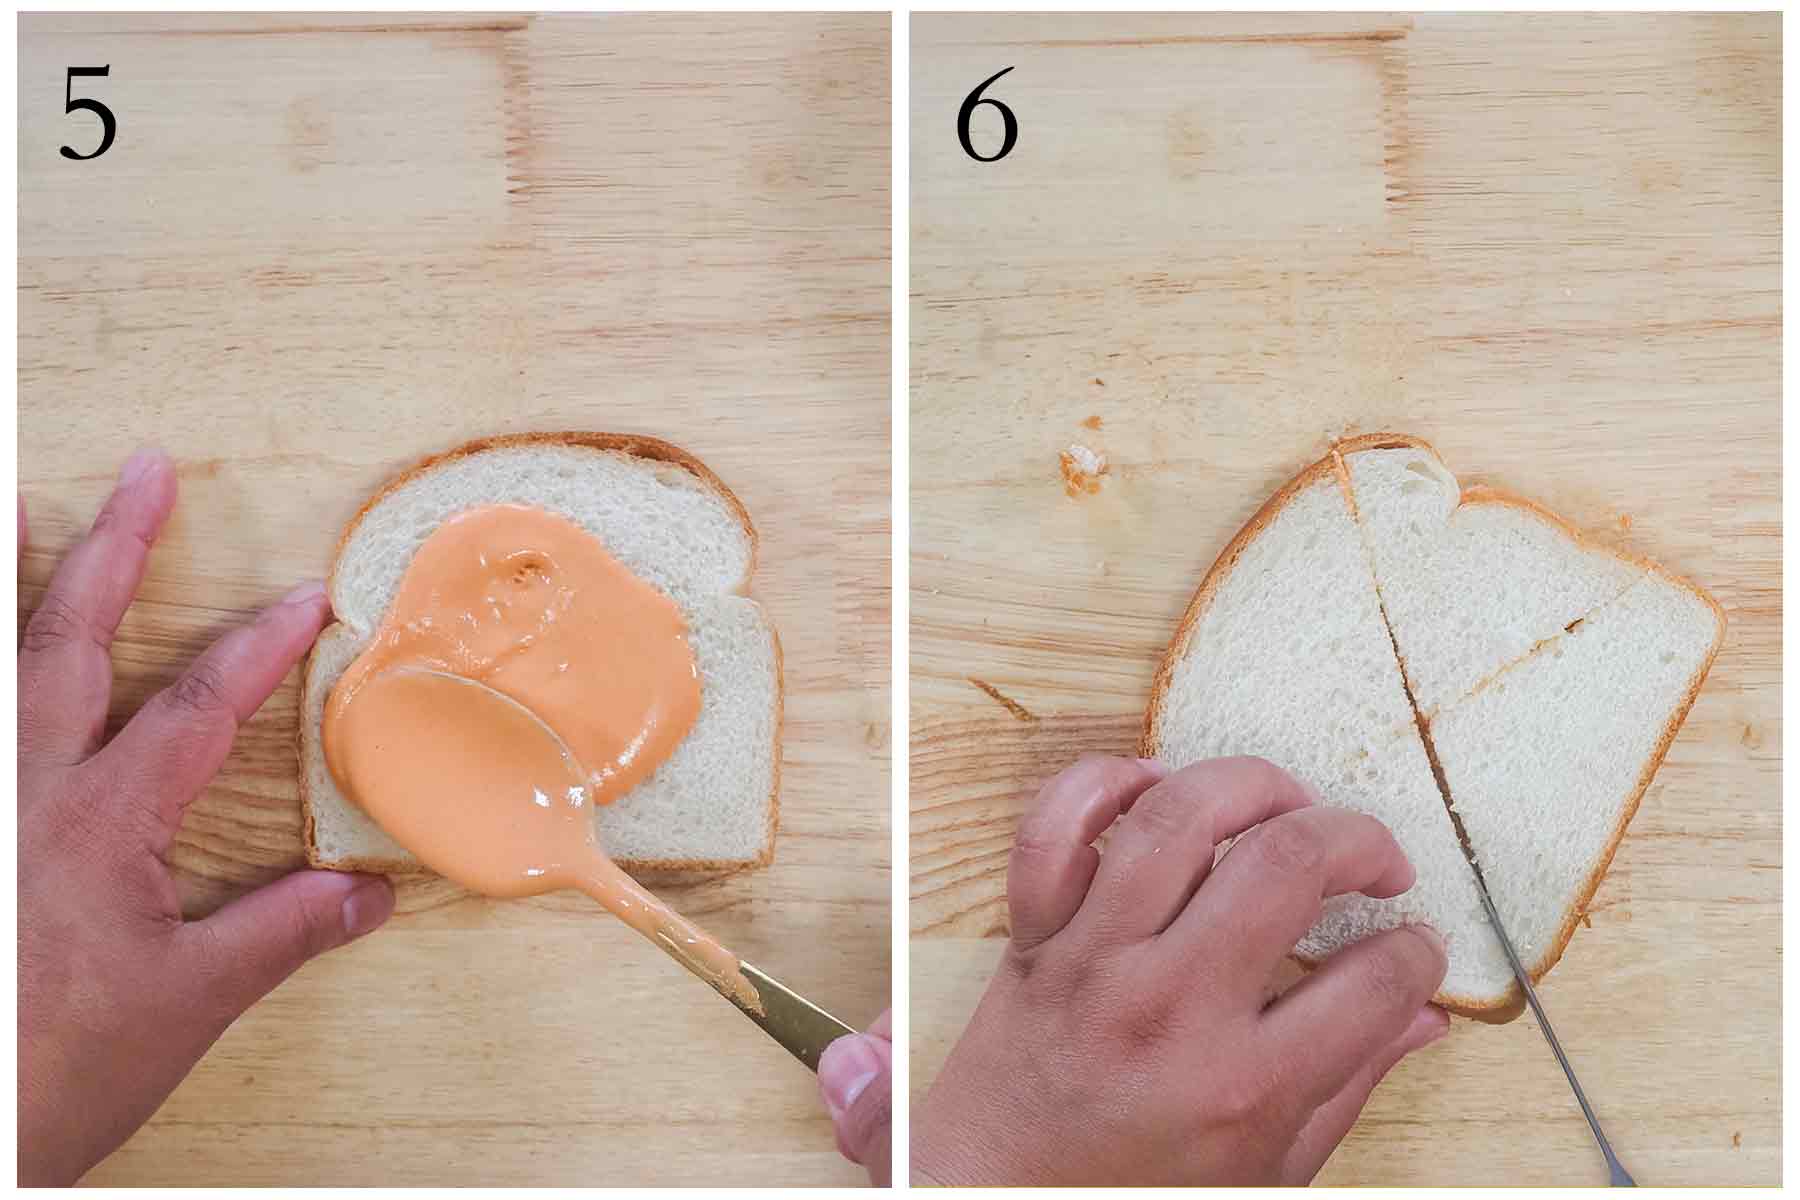 pasos 5 al 6 de como se hace los sandwich de mezcla.